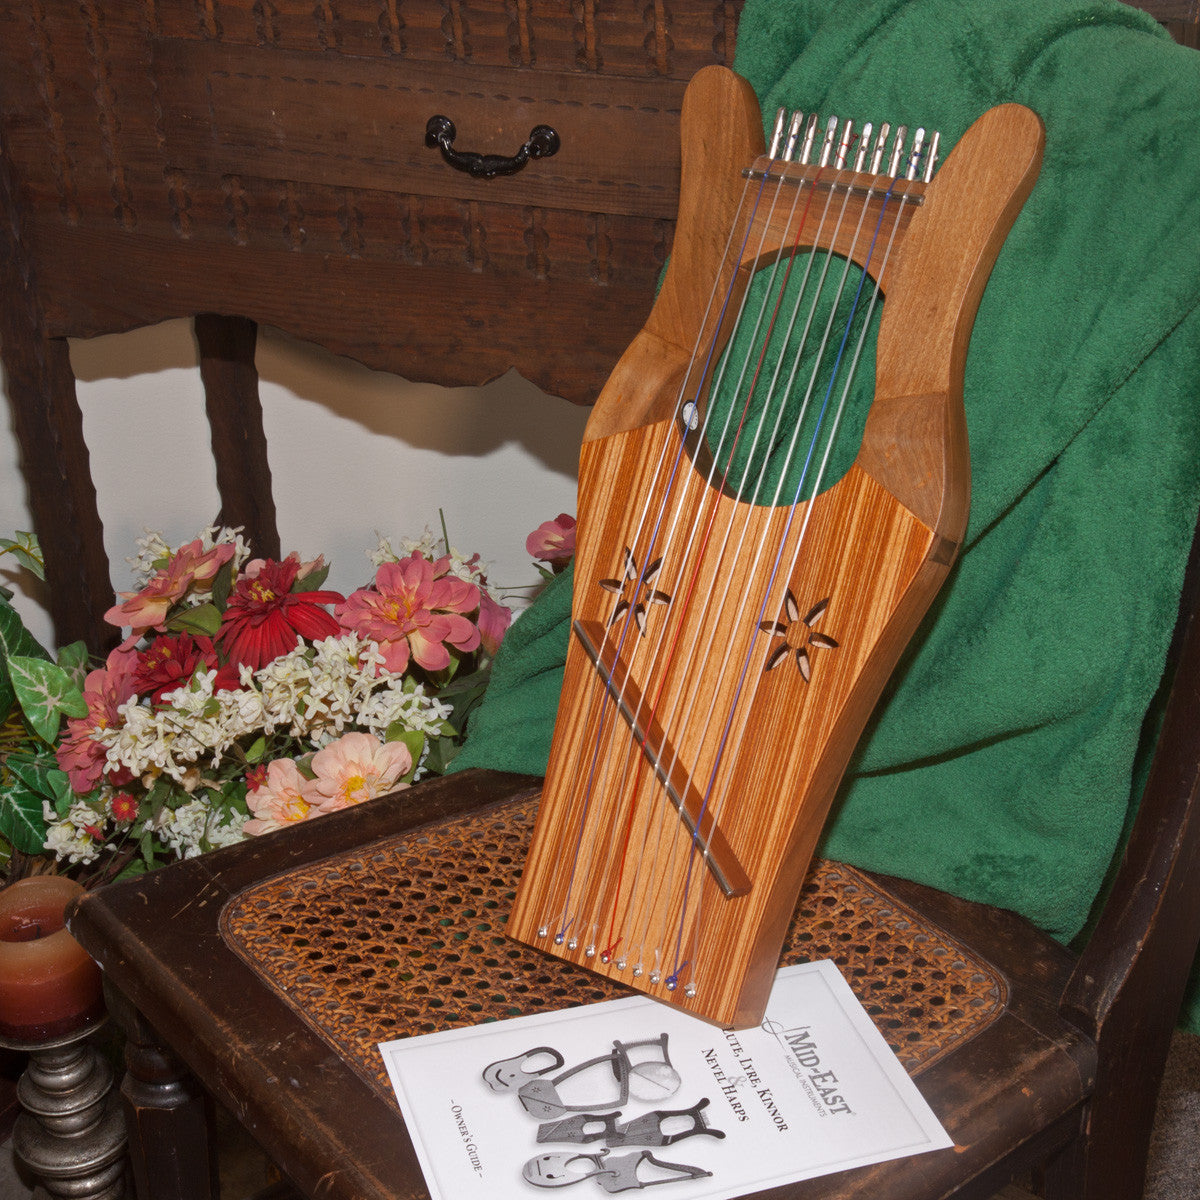 Mid-East Mini Kinnor Harp - Walnut Harps Mid-East   